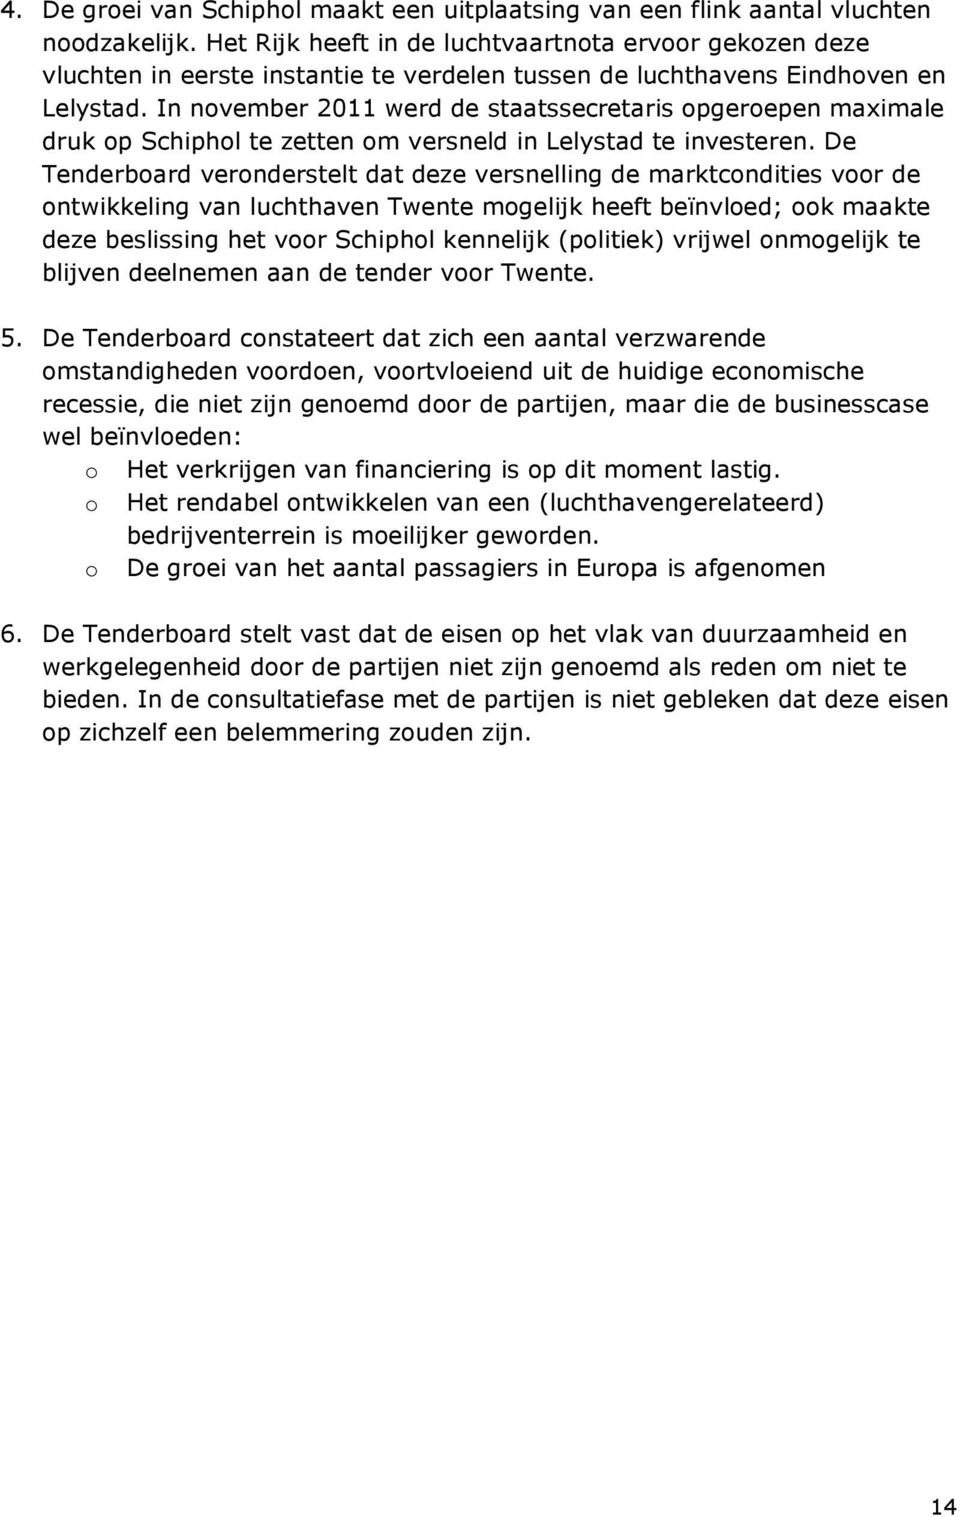 In november 2011 werd de staatssecretaris opgeroepen maximale druk op Schiphol te zetten om versneld in Lelystad te investeren.